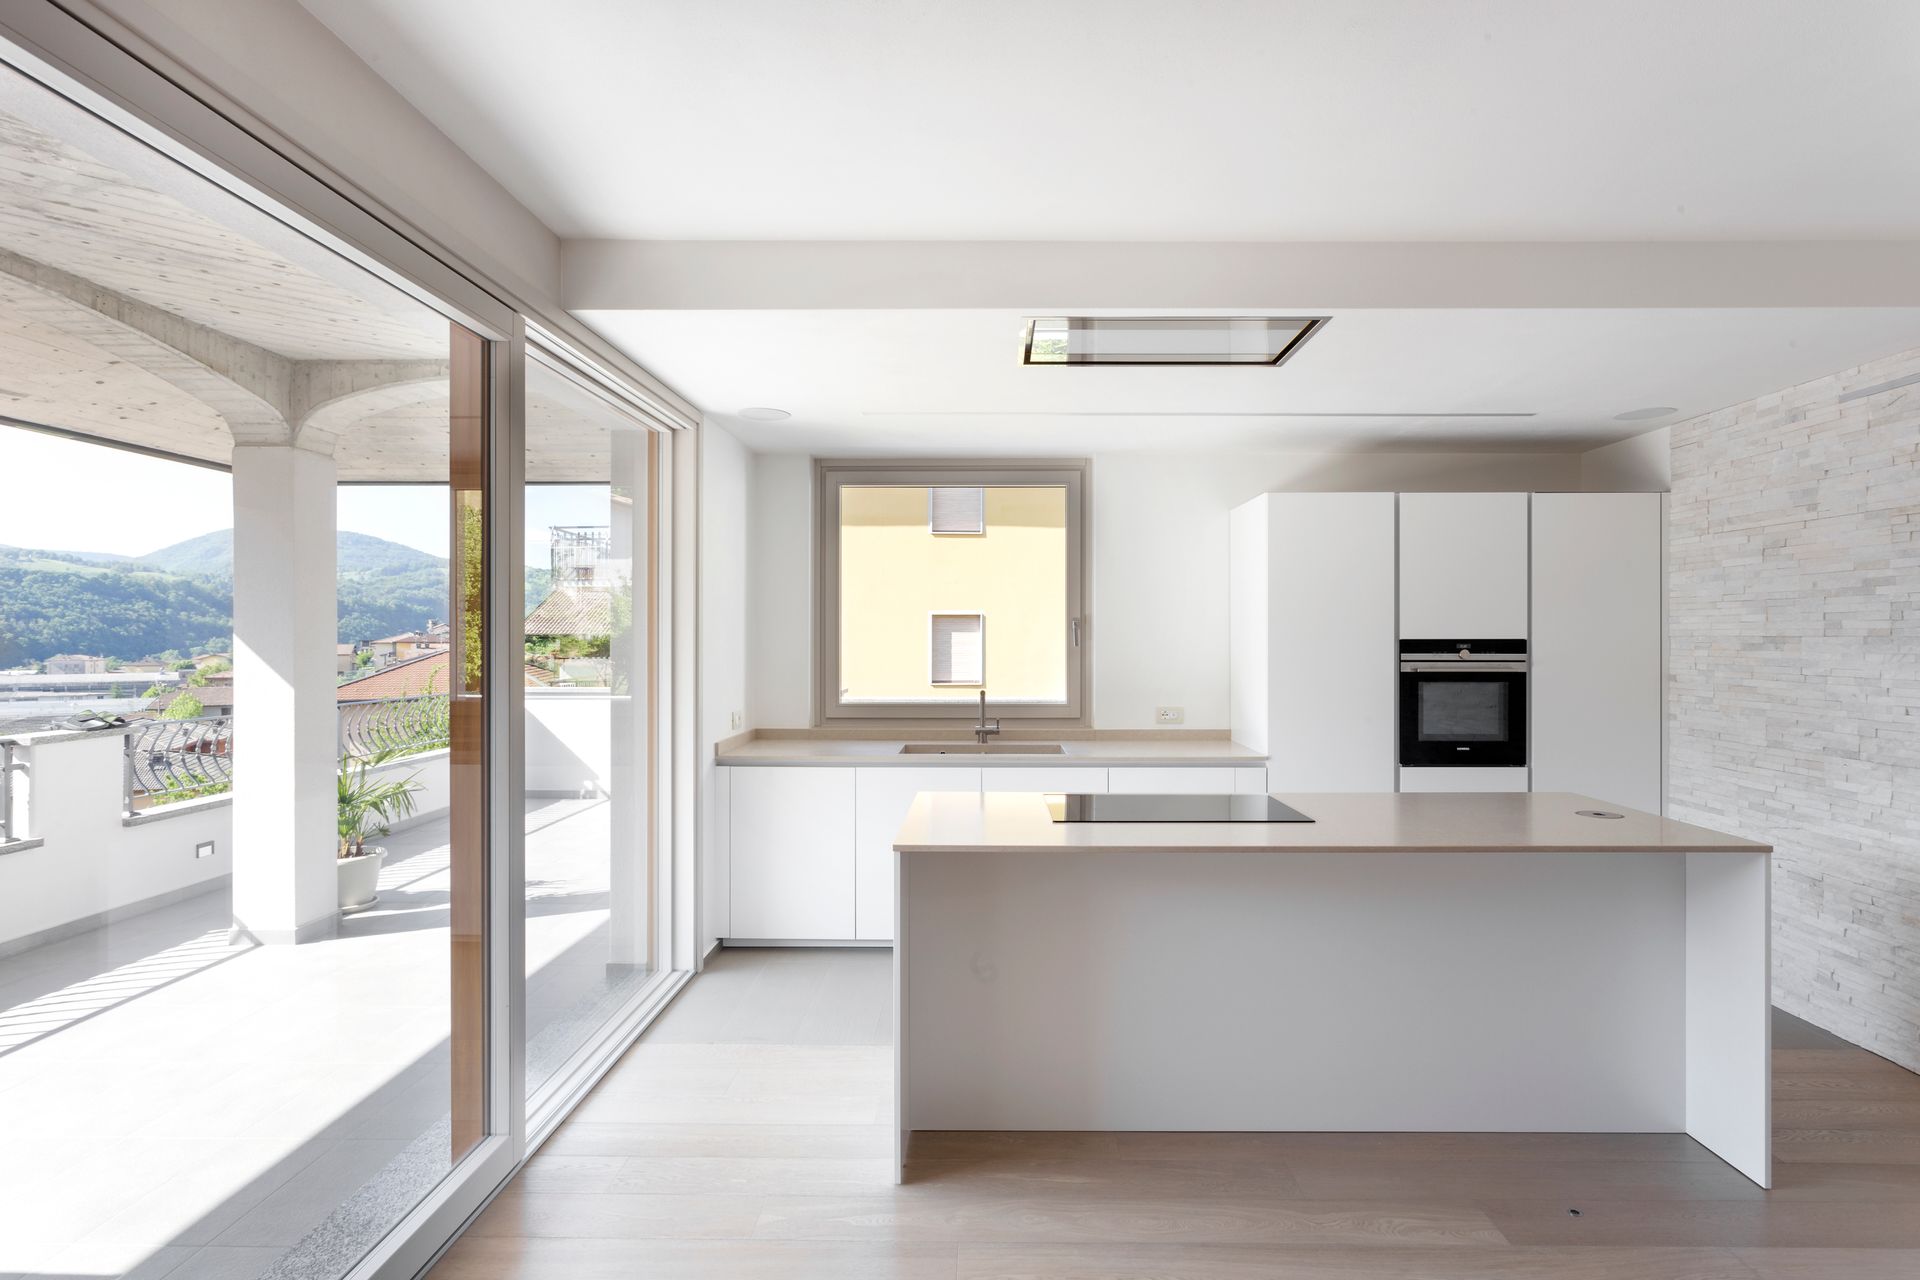 Progetto interior design, ristrutturazione appartamento ultimo piano casa unifamiliare provincia di Bergamo. Officina Magisafi architettura design - cucina